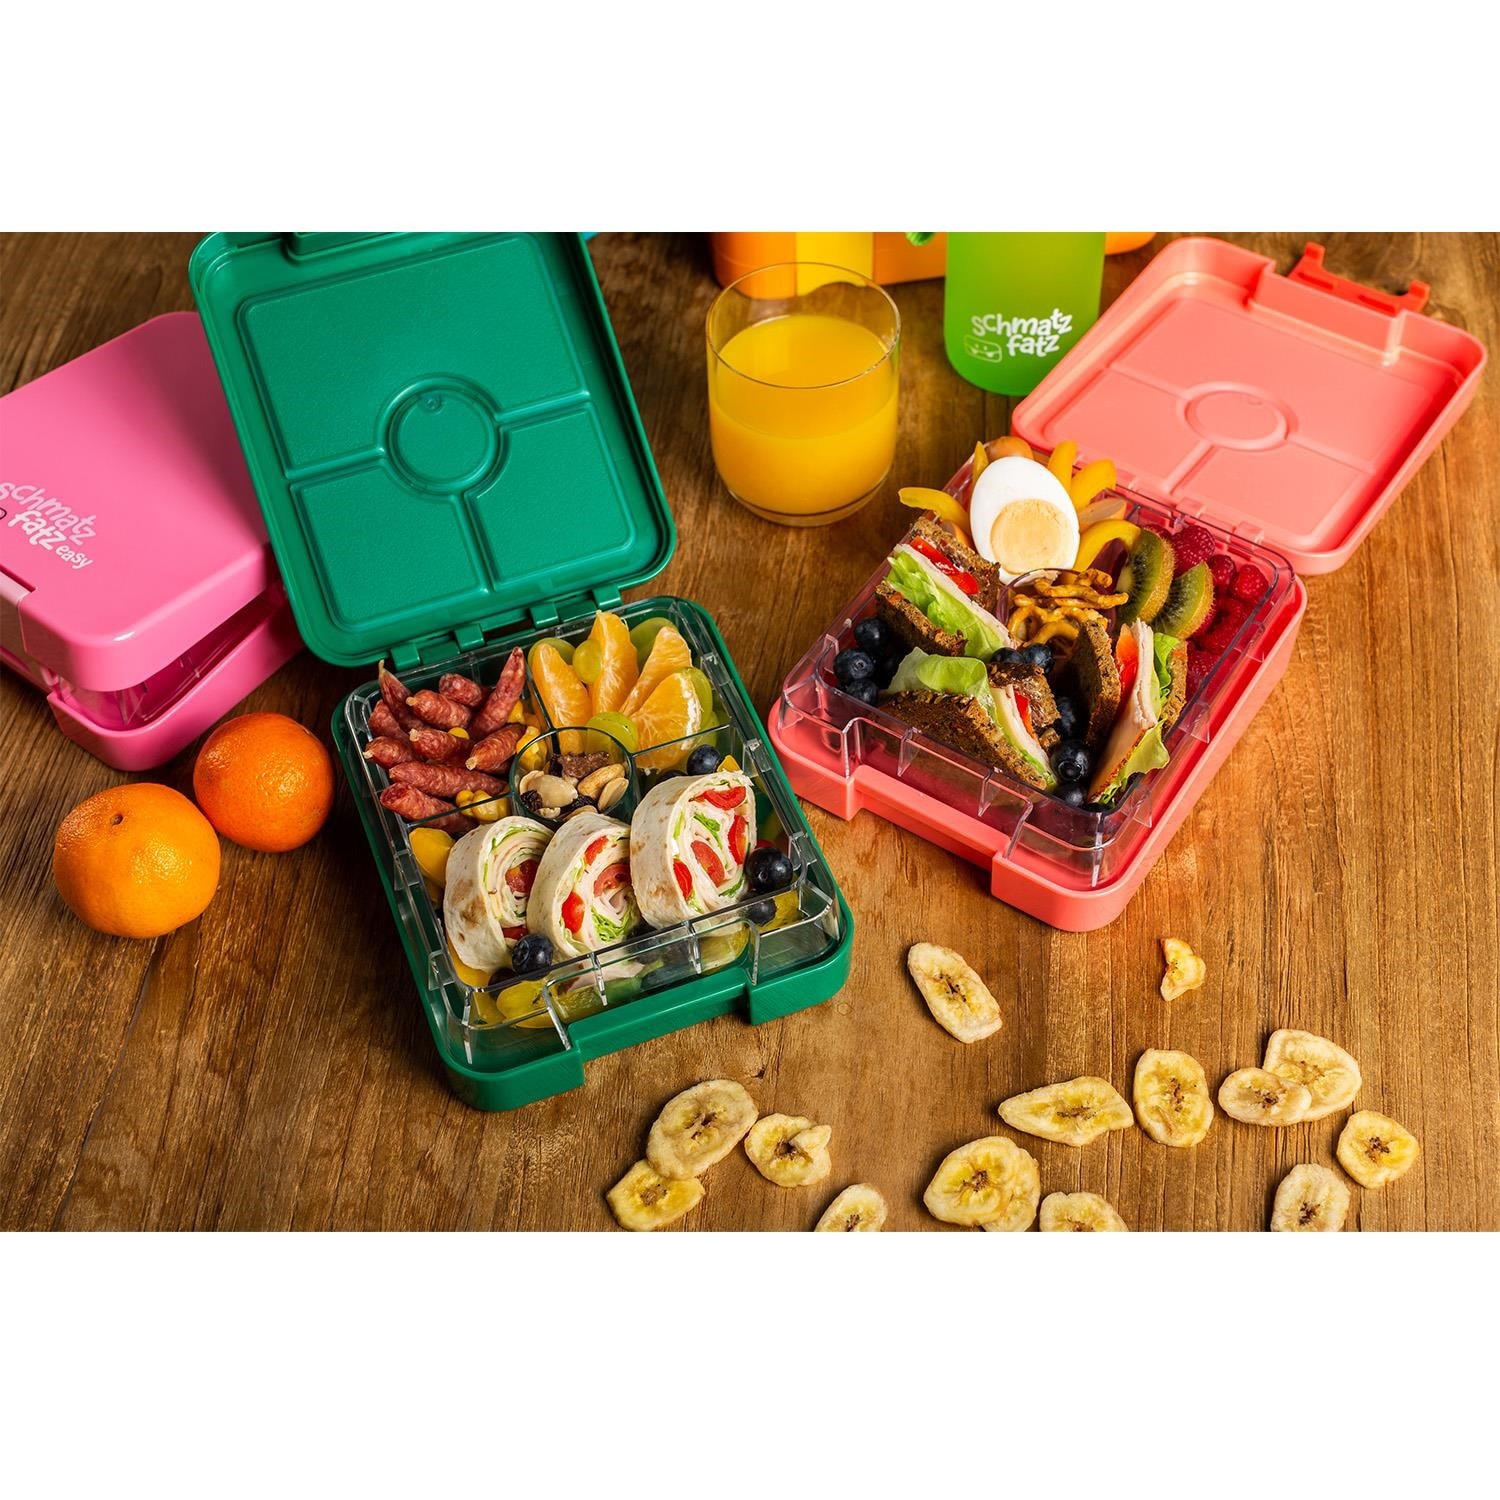 Schmatzfatz Lunch Box Enfant, Compartiments, Boite Bento Colorée